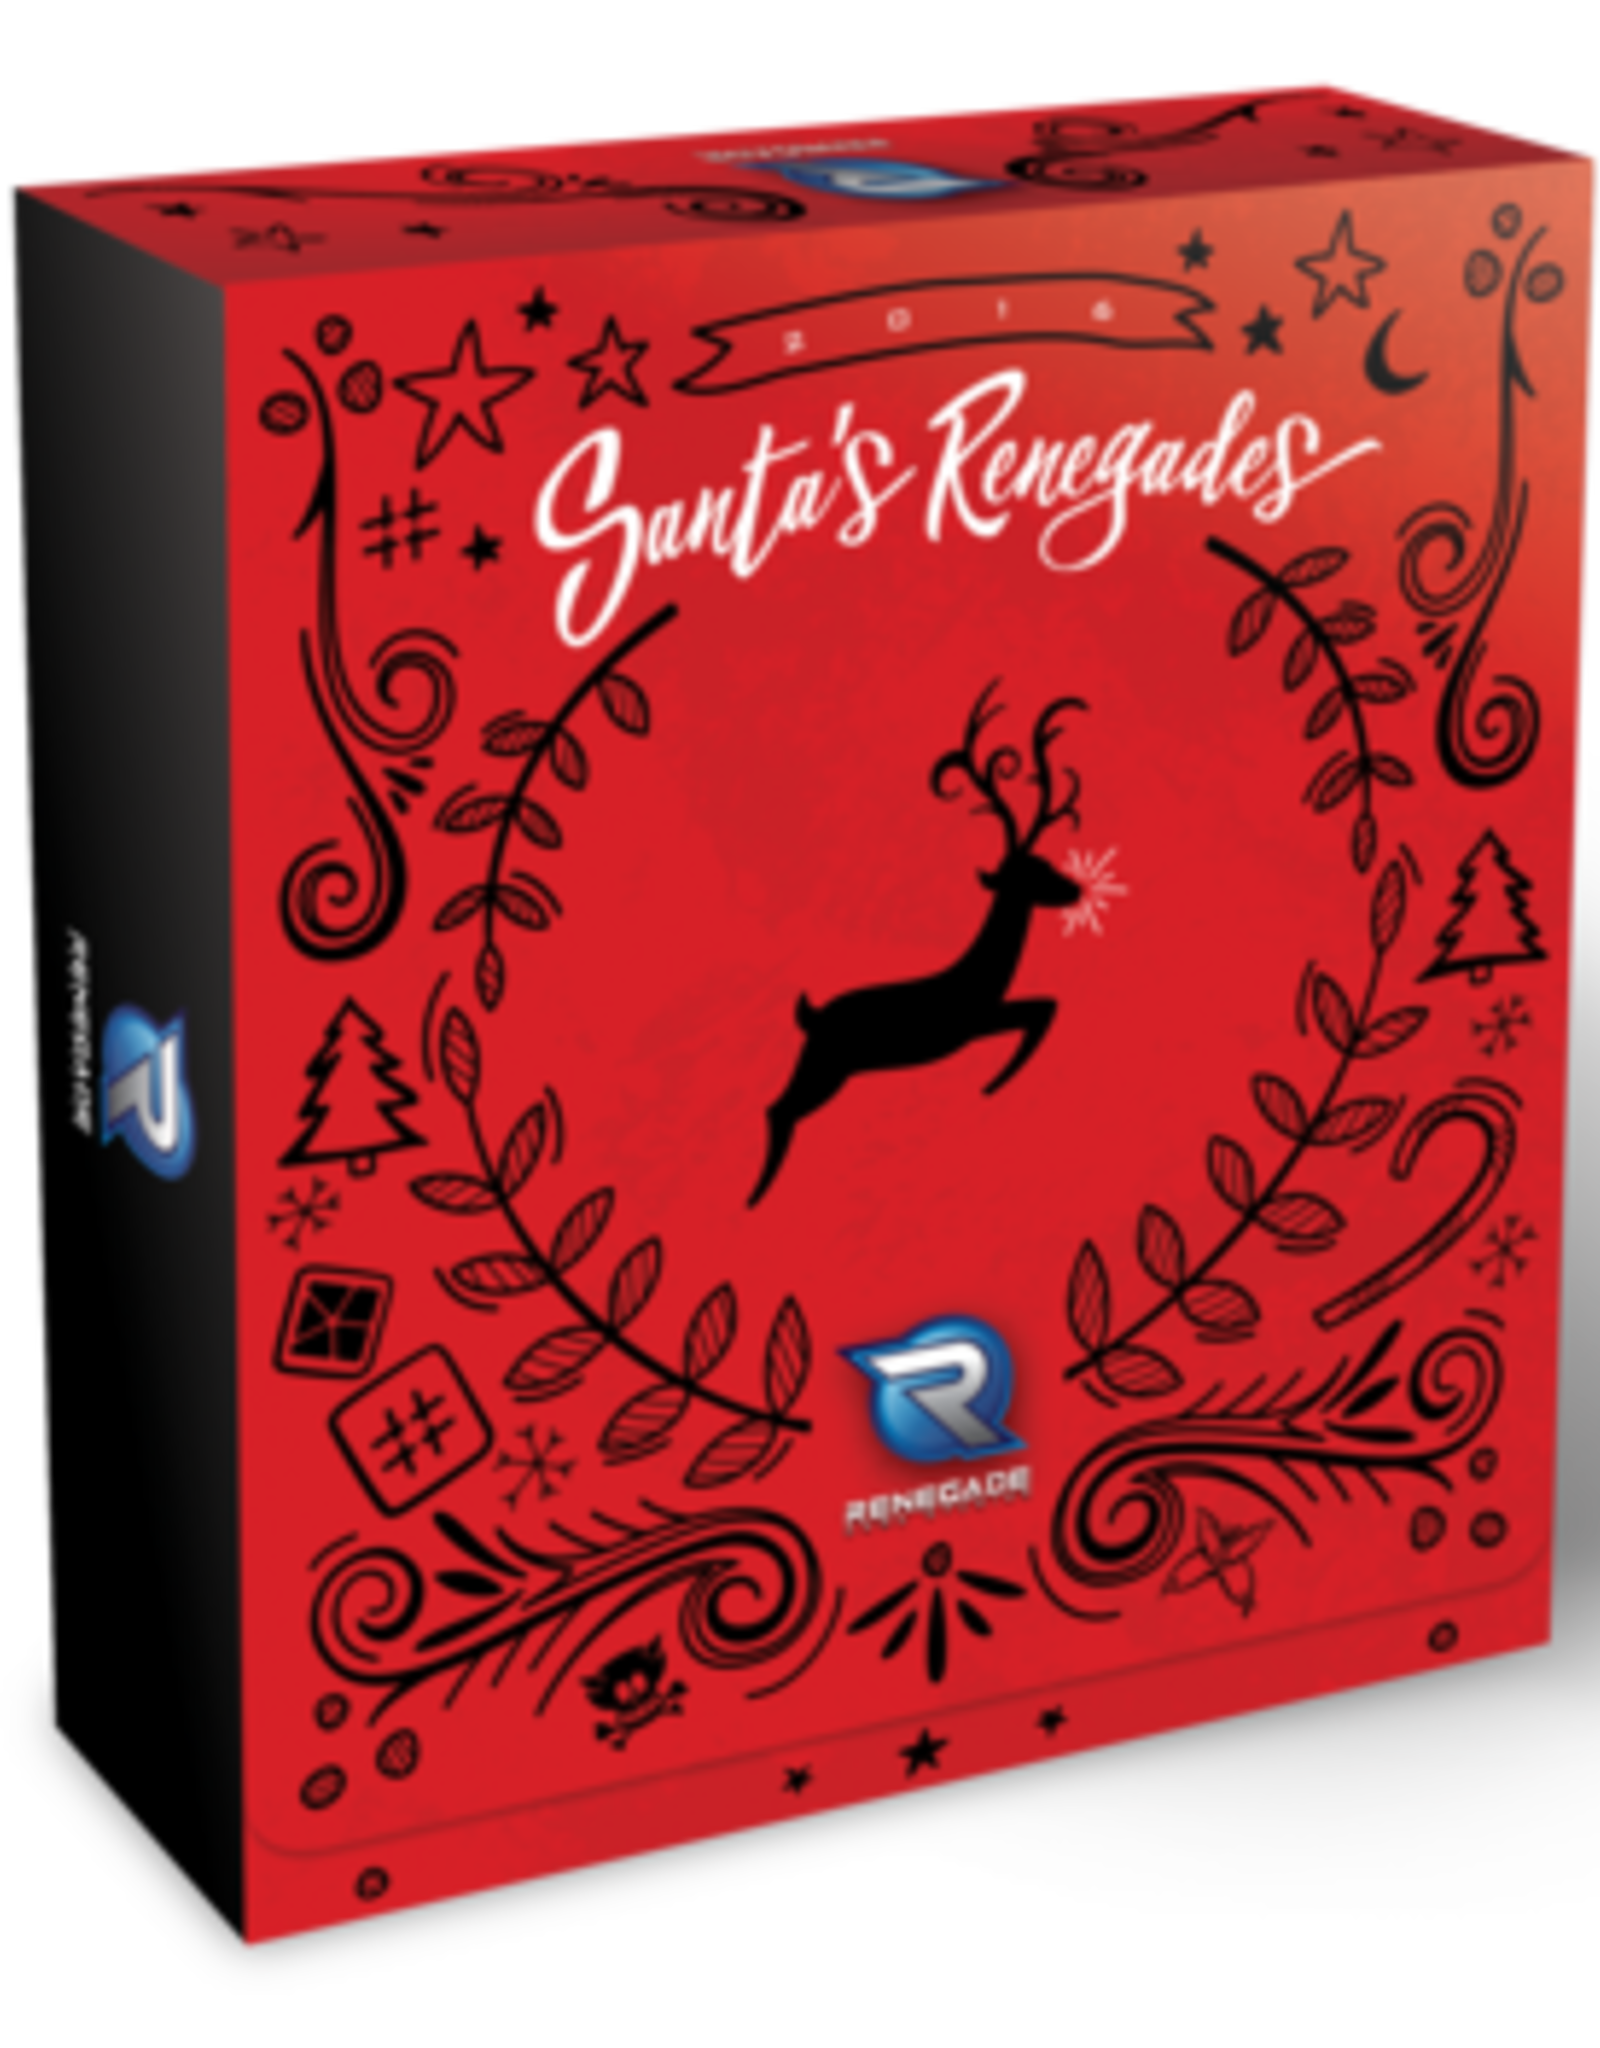 Renegade Game Studios Santa's Renegades